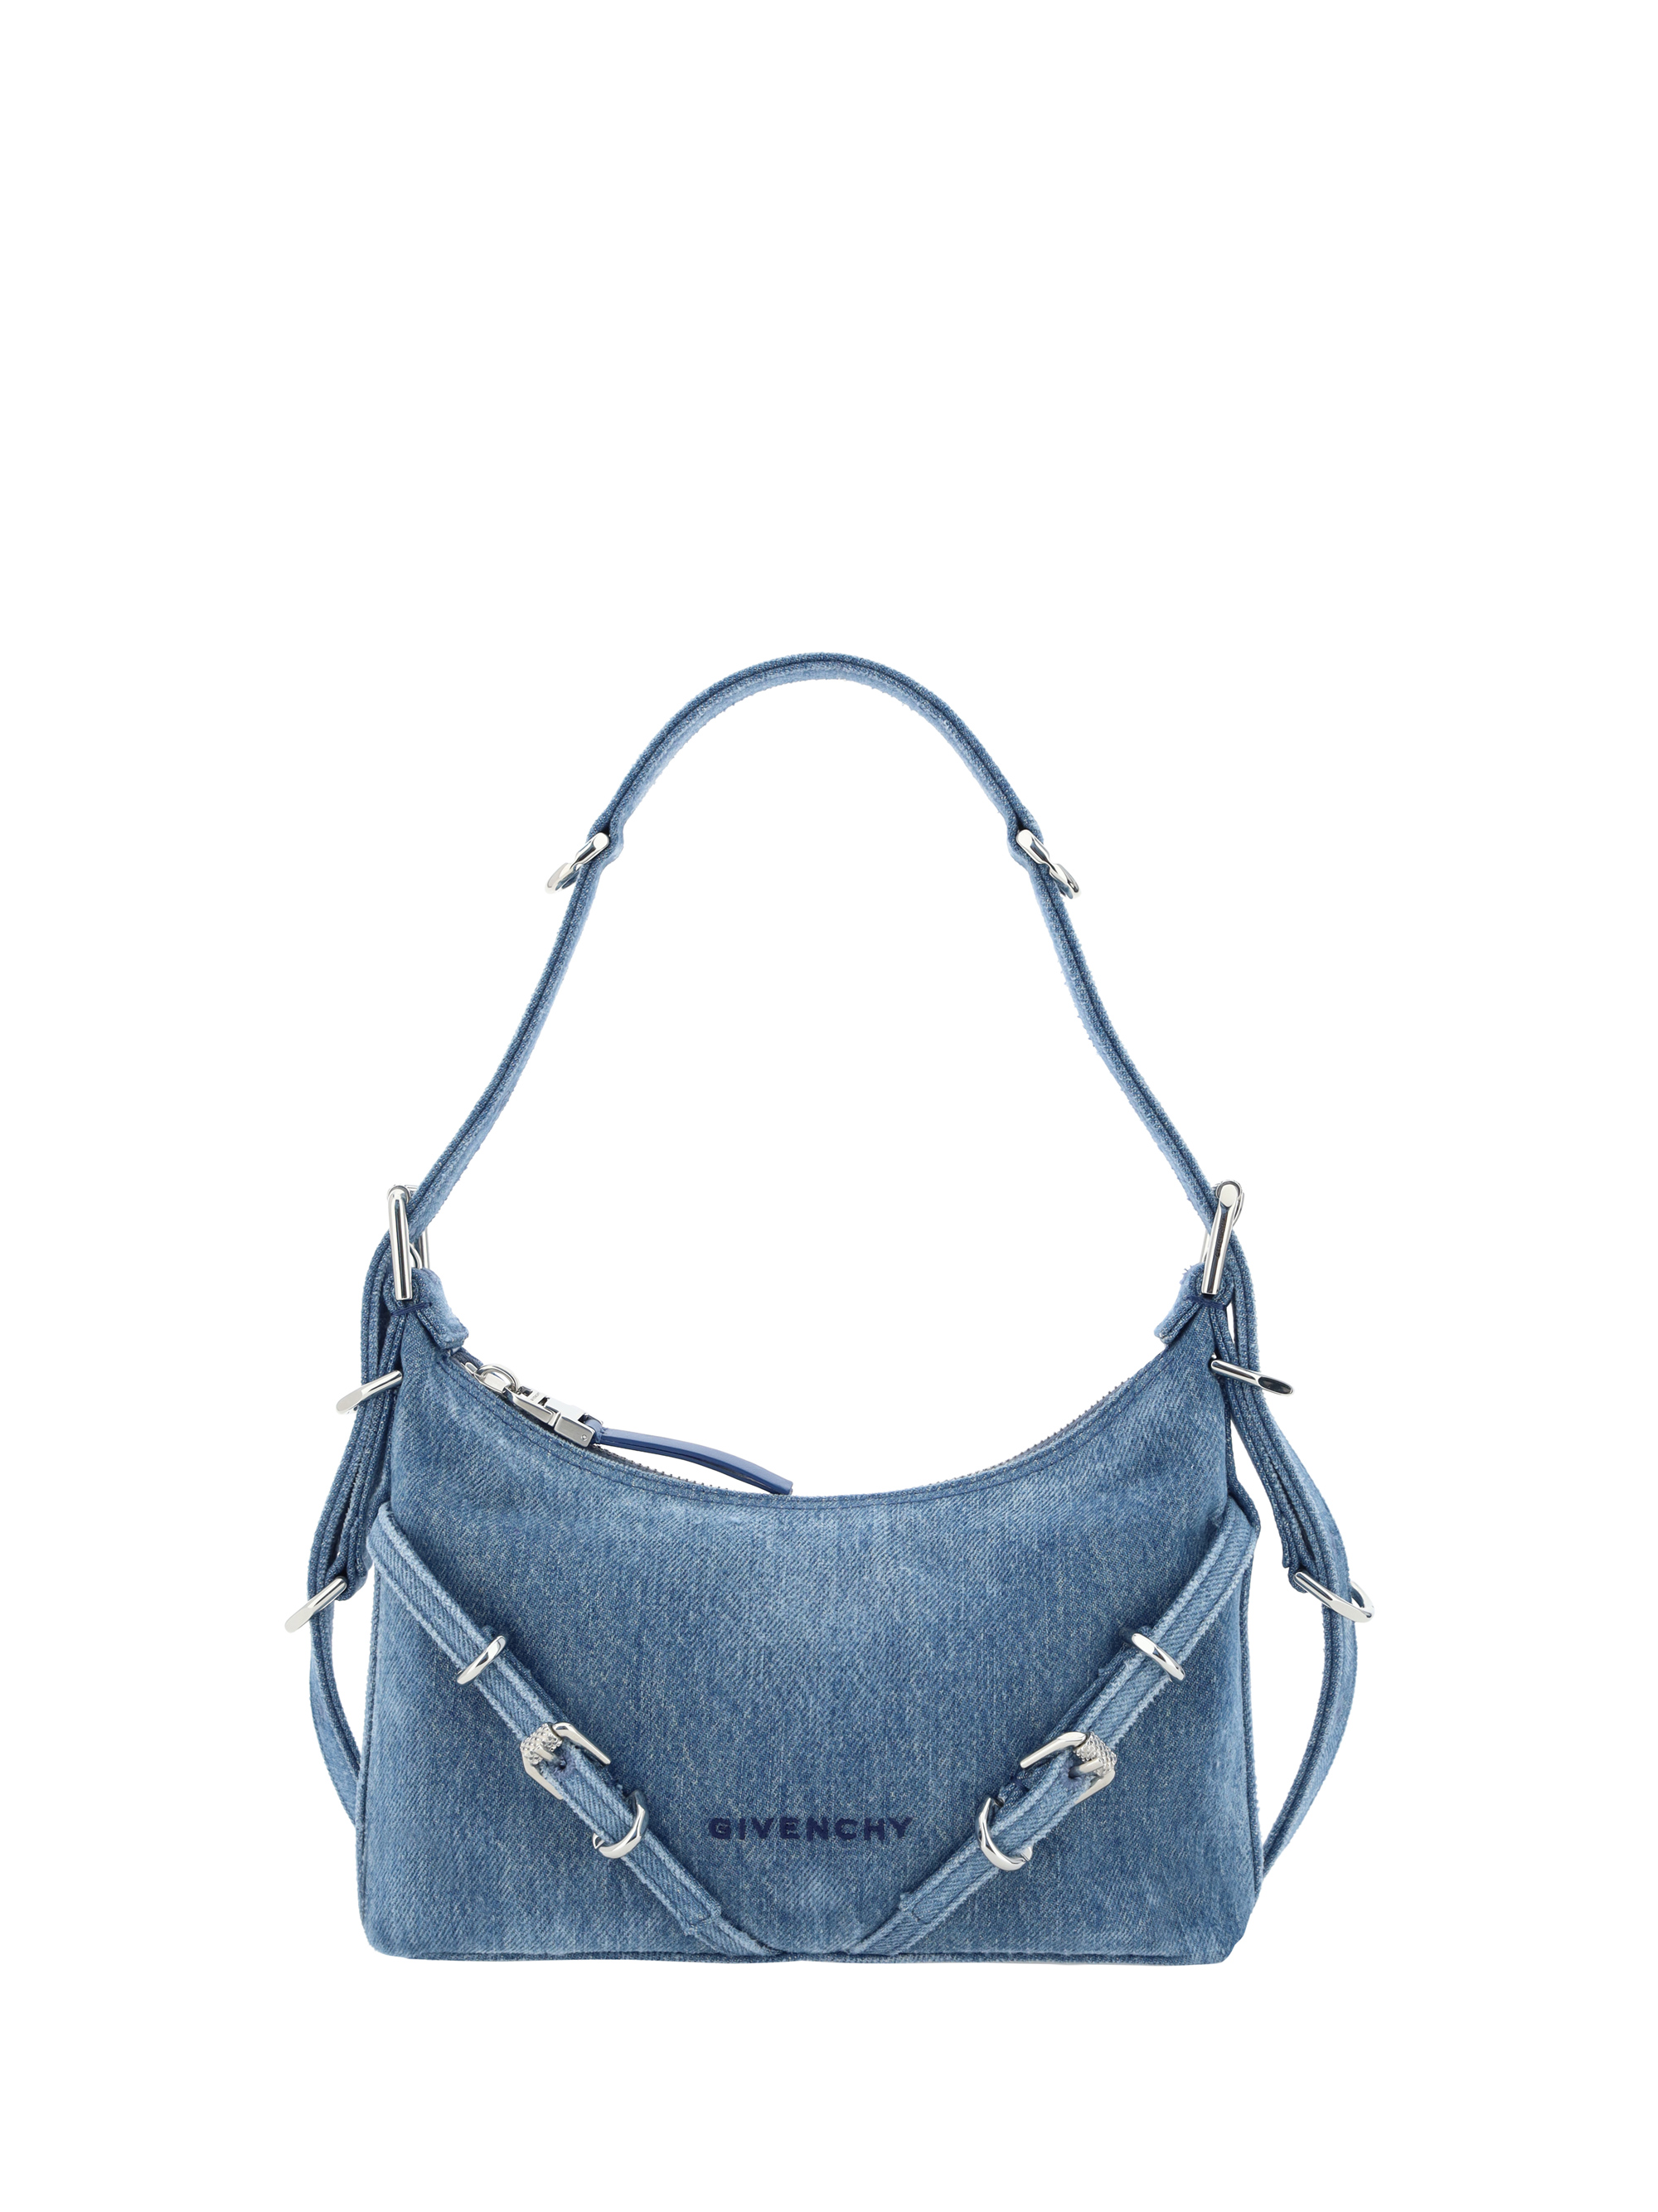 GIVENCHY Antigona Medium Leather Shoulder Bag Beige - 15% OFF